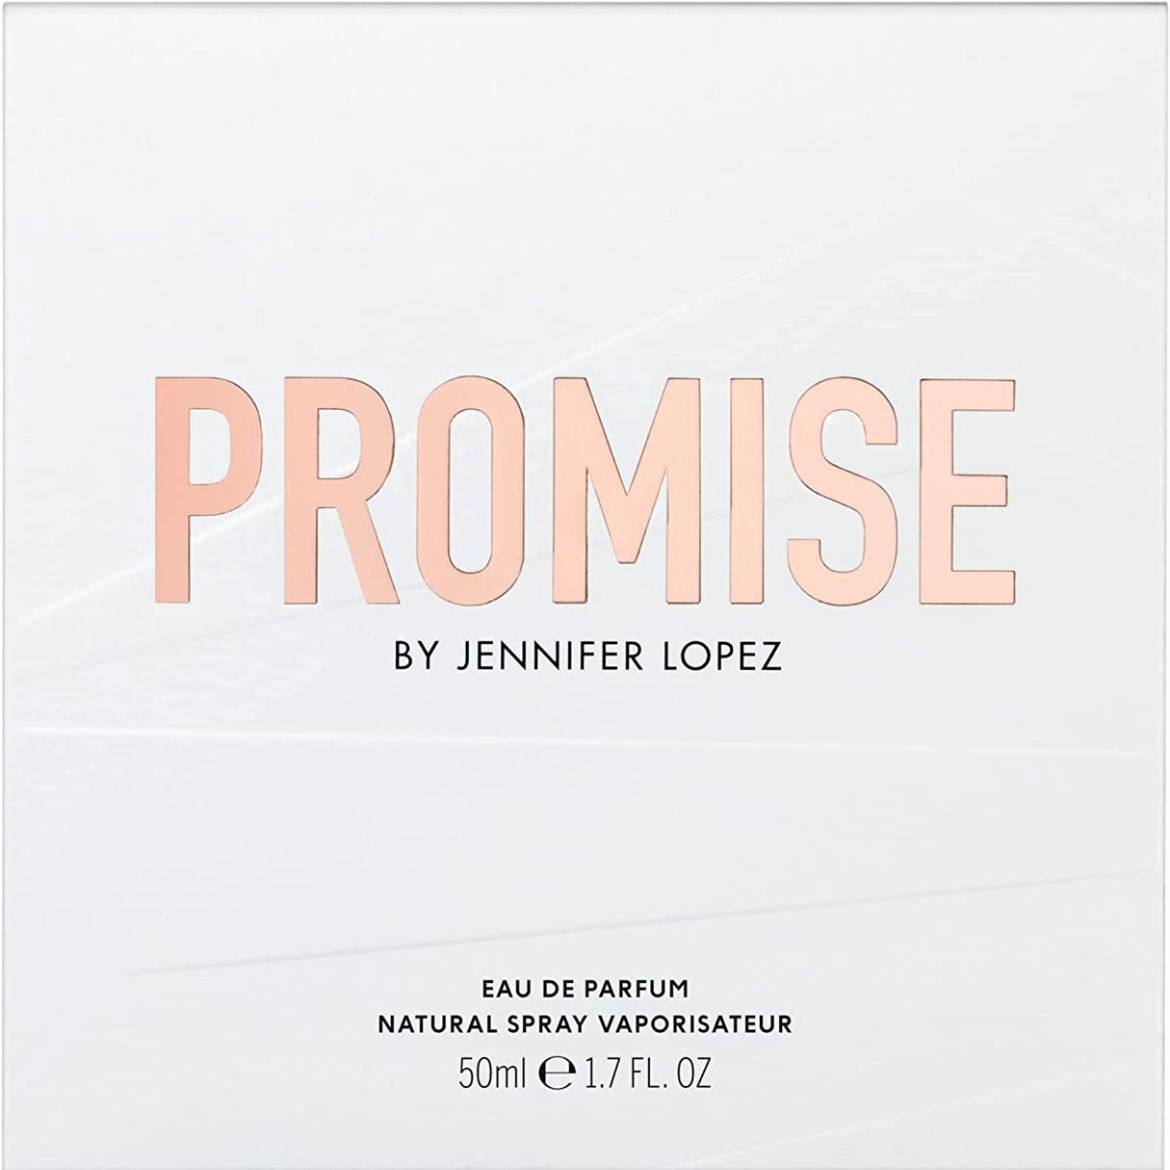 JENNIFER LOPEZ - PROMISE - EAU DE PARFUM 50ml SPRAY